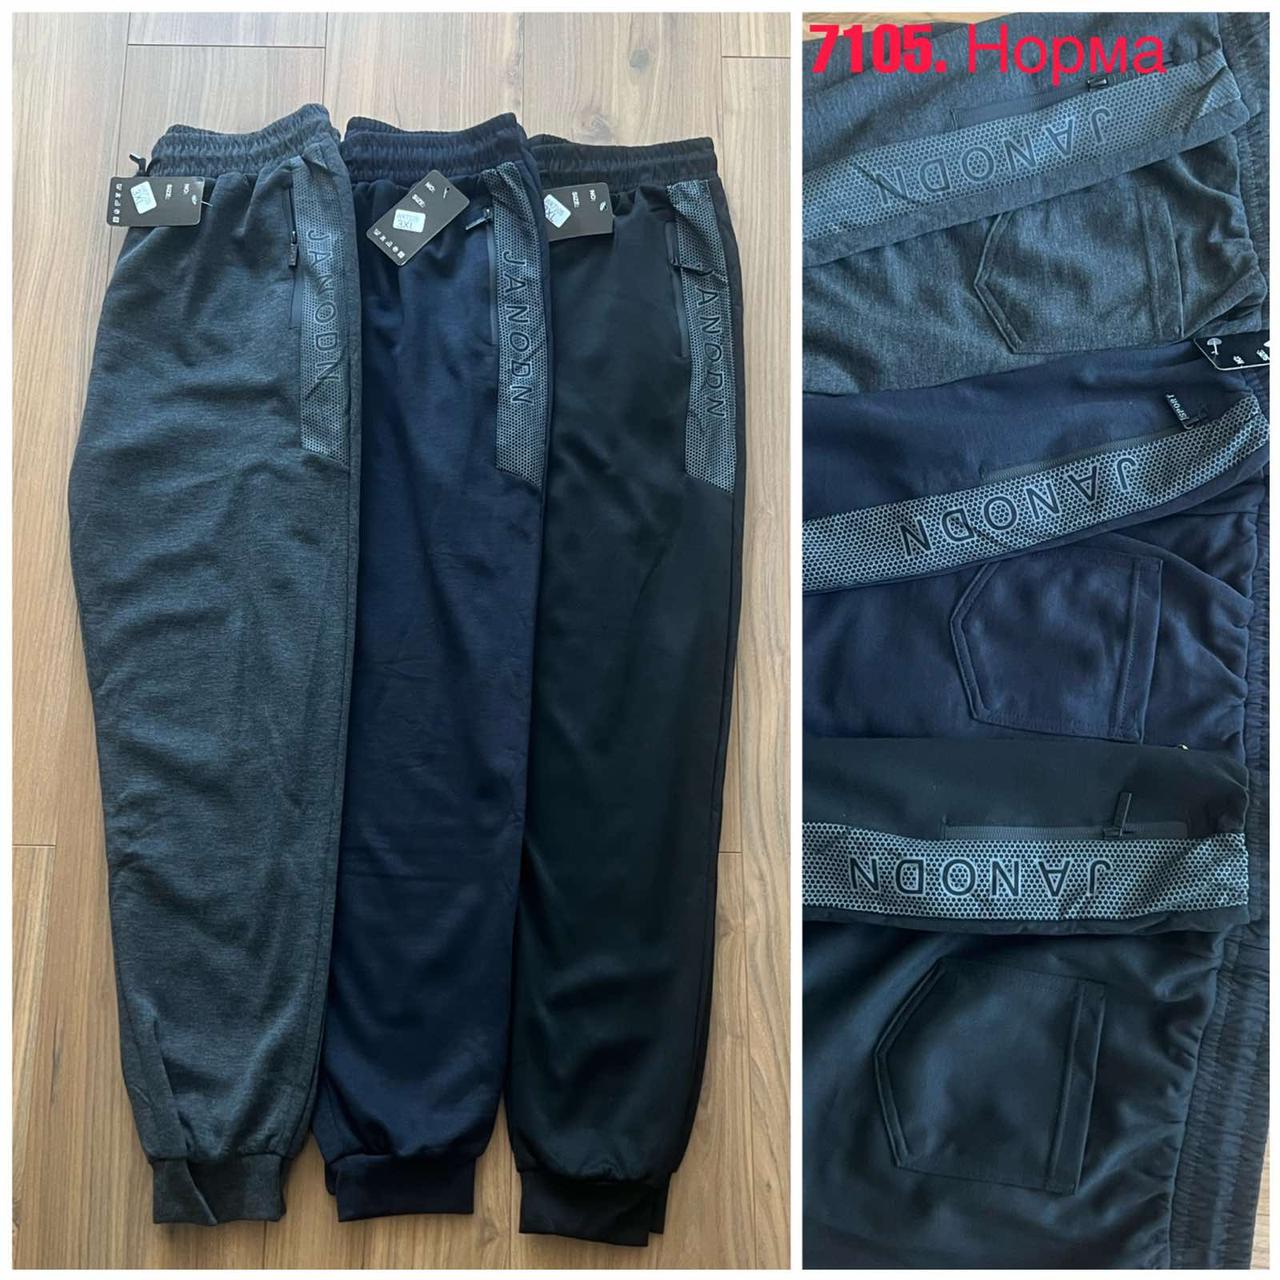 Чоловічі спортивні штани манжет №7105 р.М-3XL (48-56)